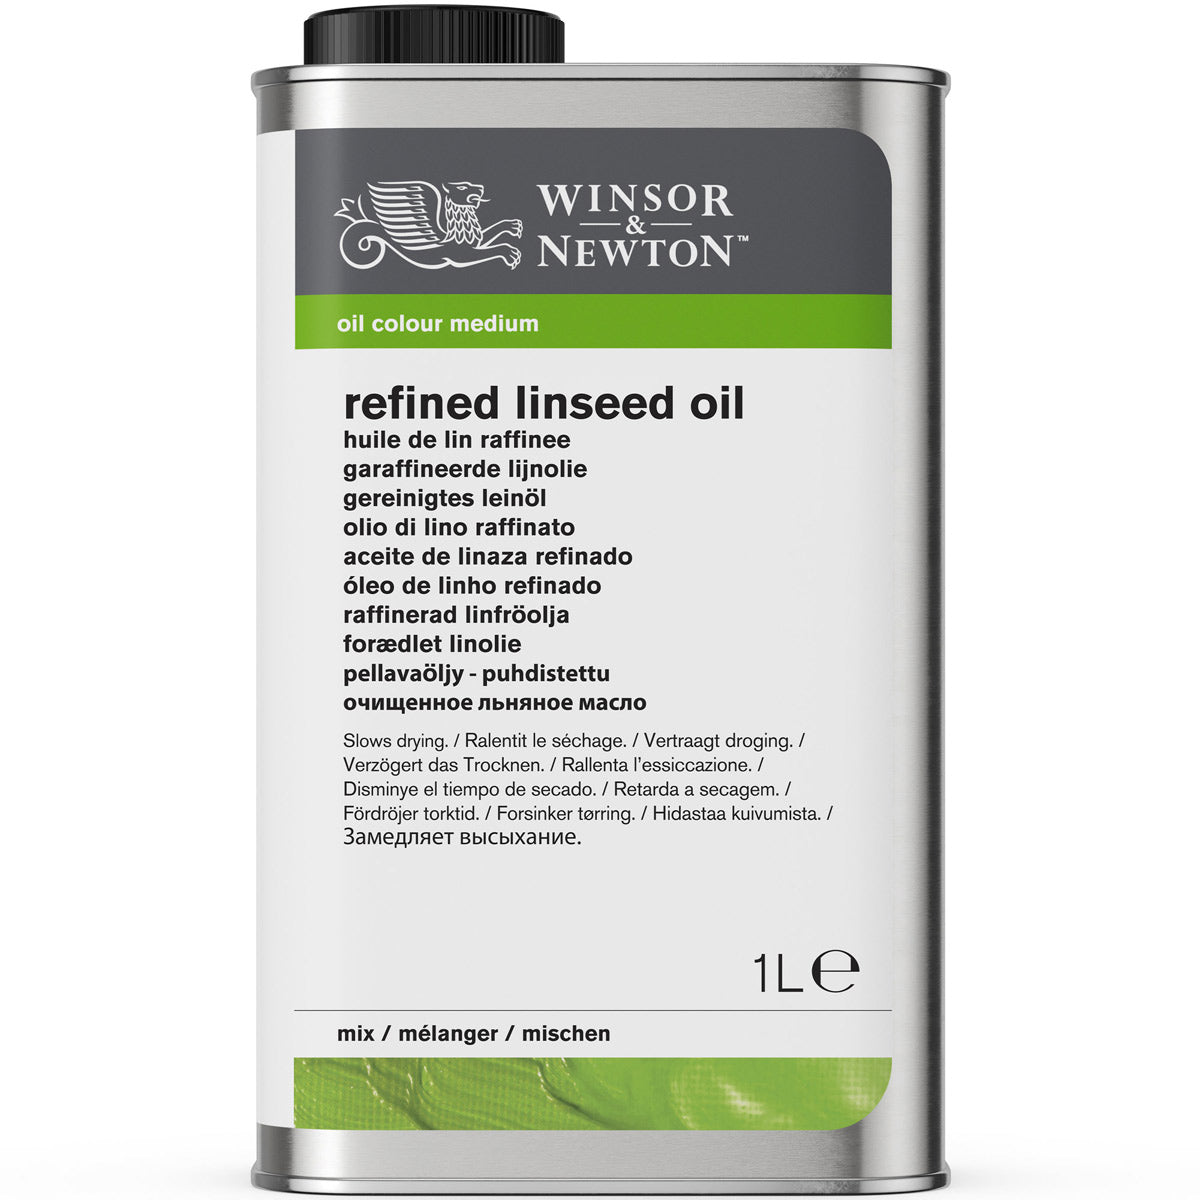 Winsor e Newton - Olio di semi di lino raffinato - 1 litro